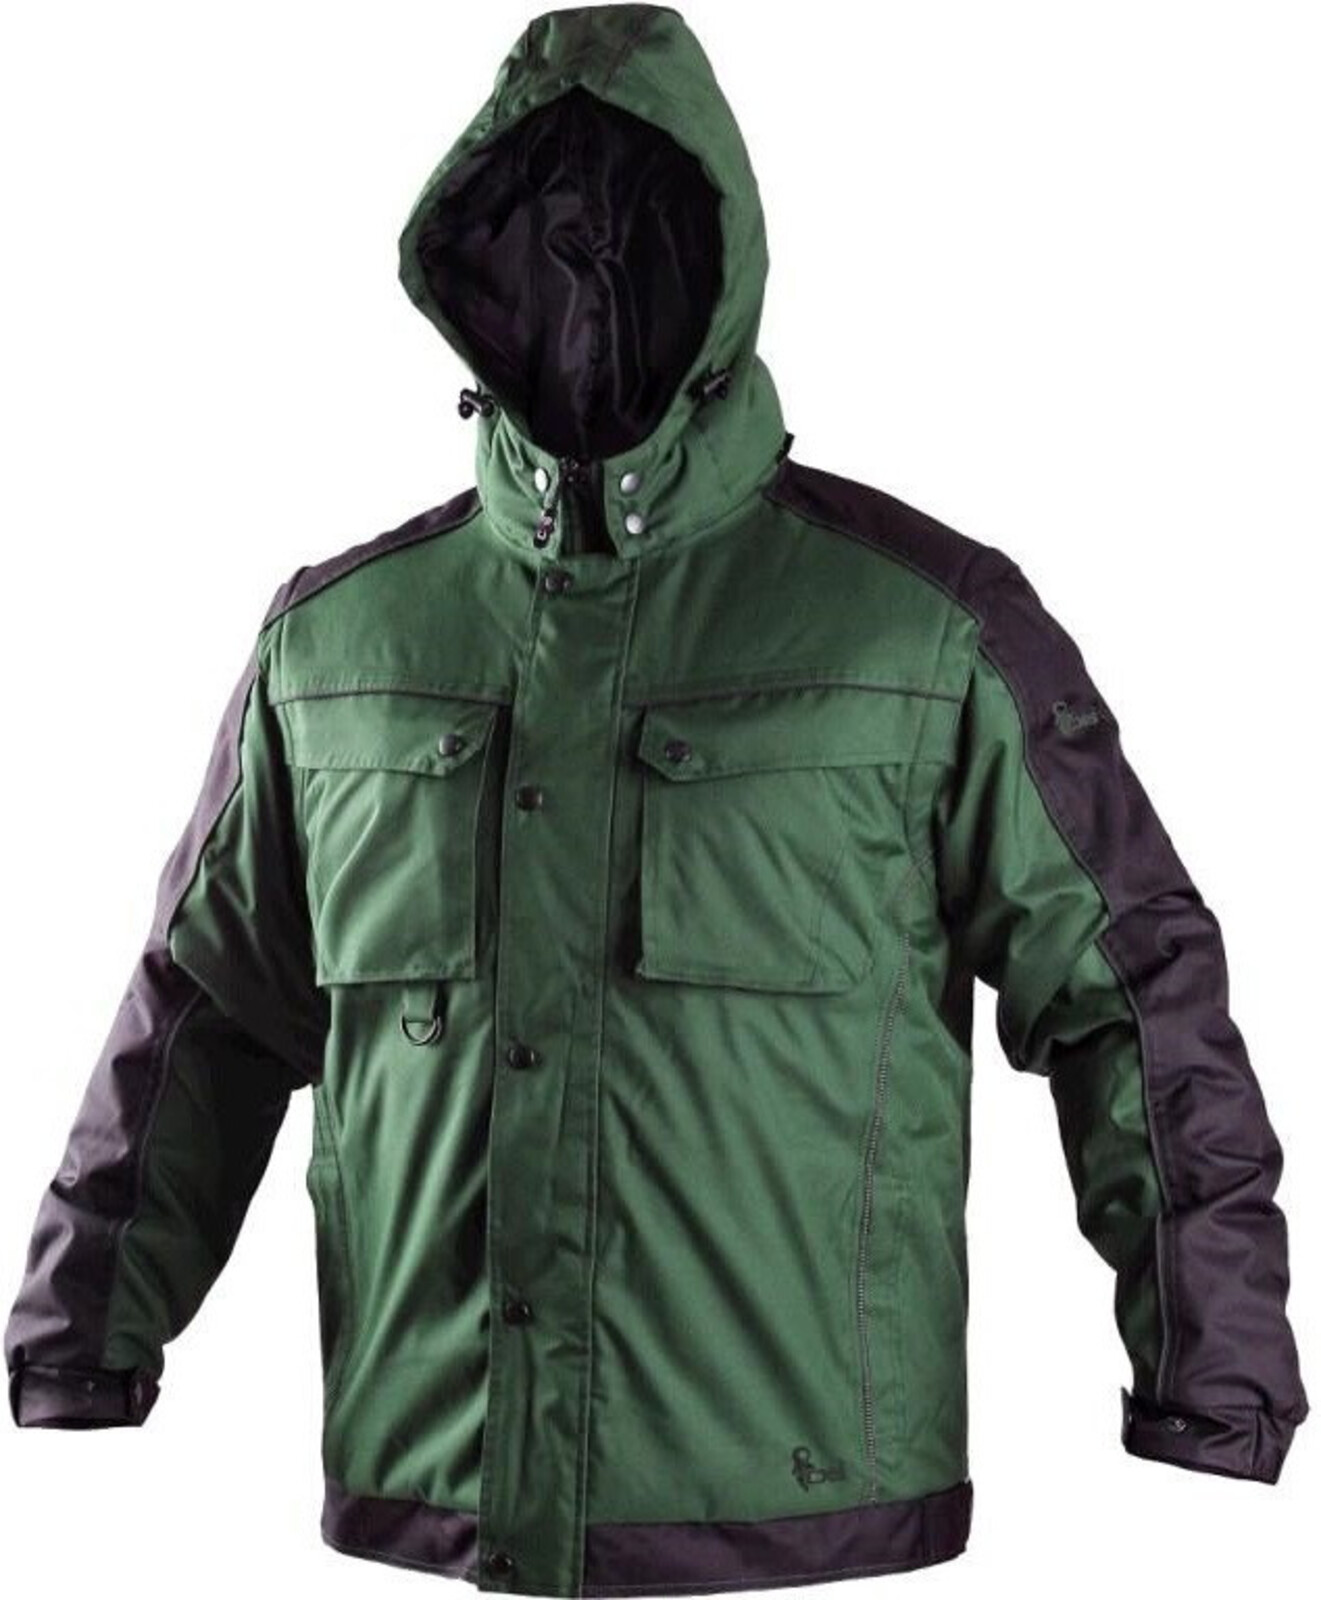 Pánska zimná bunda CXS Irvine 2v1 - veľkosť: 3XL, farba: zelená/čierna